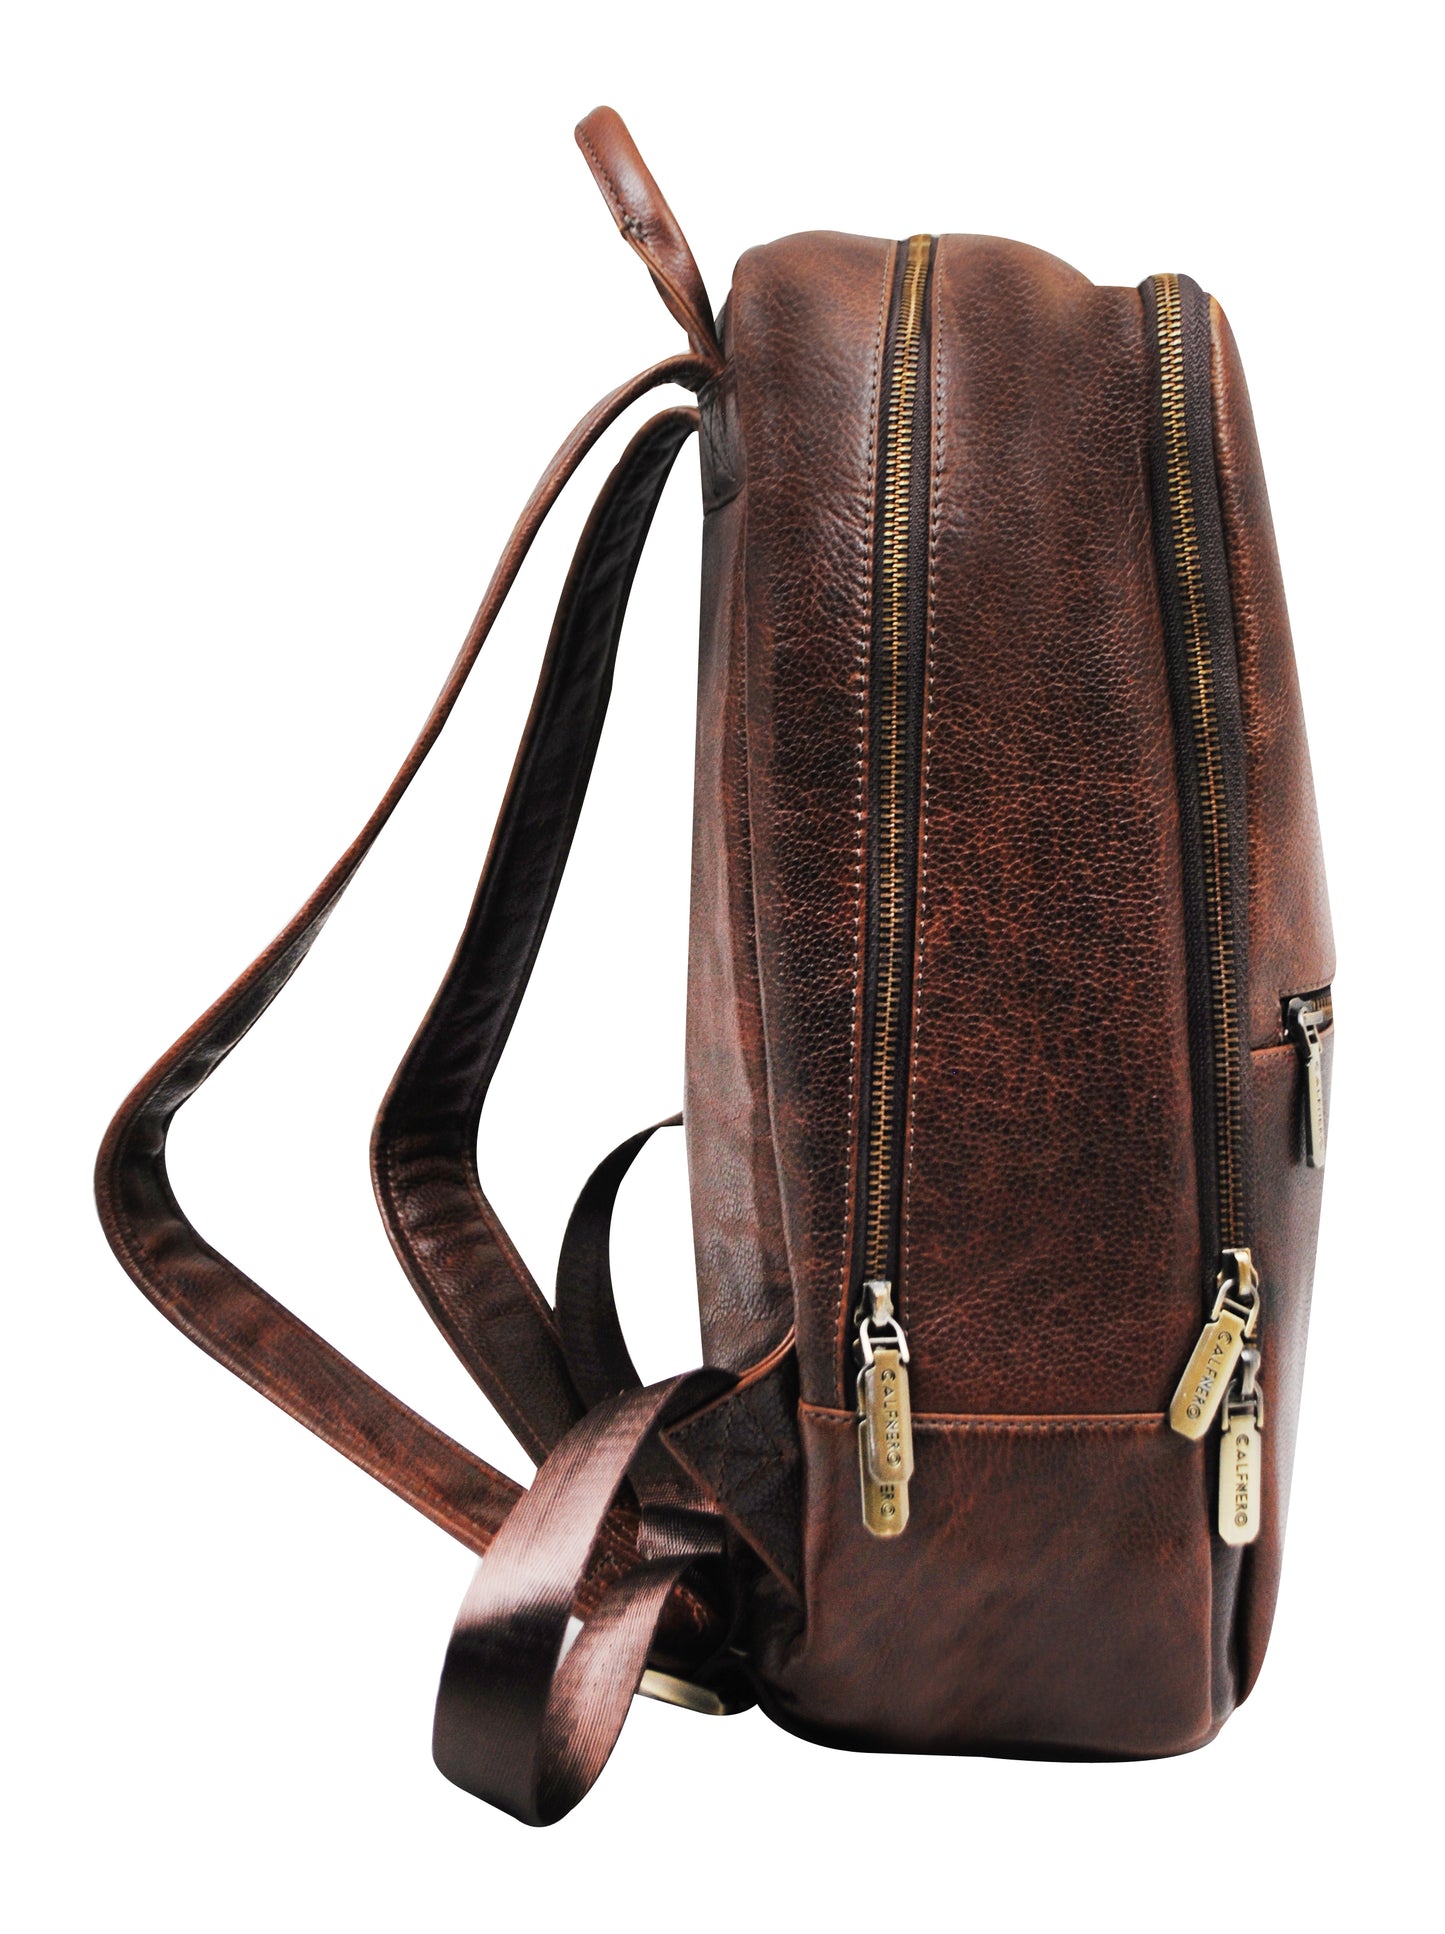 Calfnero Men's Genuine Leather Backpack (402623-Brown)